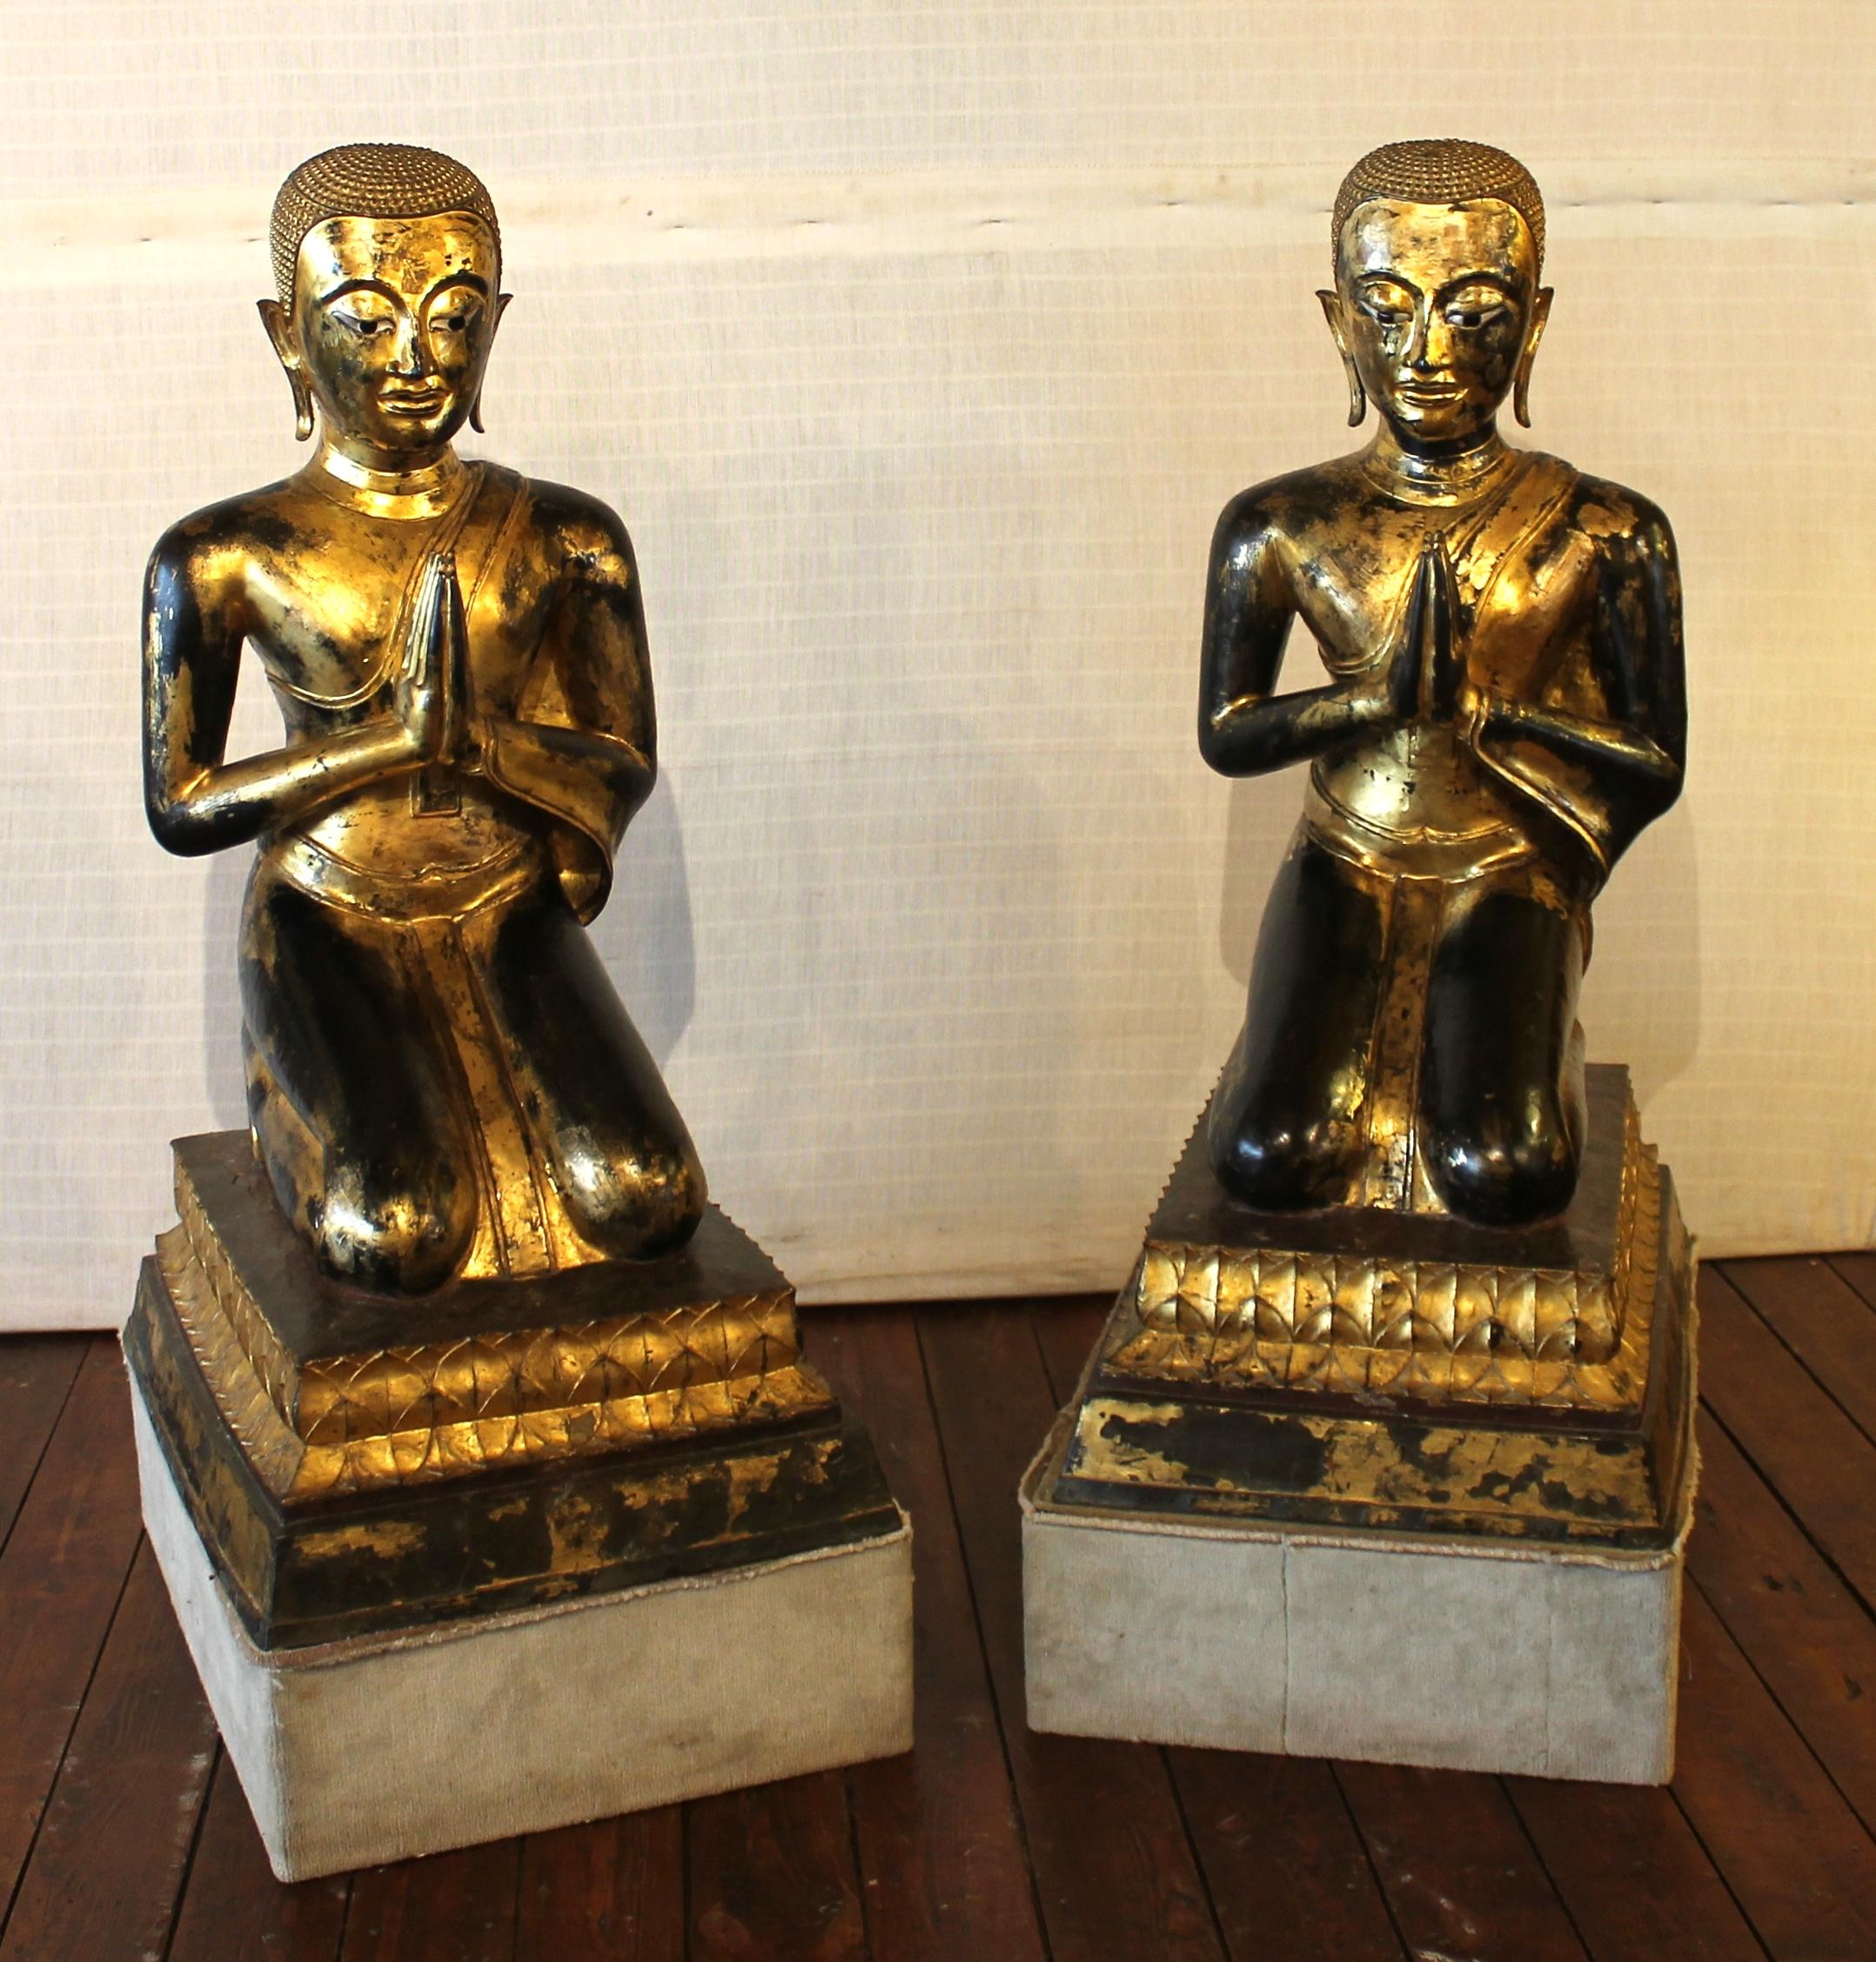 Seltenes Mönchspaar aus dem 18. Jahrhundert - Ayutthaya-Thailand
Hervorragendes Paar großer lackierter und vergoldeter Bronzemönche
sehr schönes Gesicht und Ausdruck und extrem selten zu finden
Die Mönche sind in hervorragendem Zustand und müssen